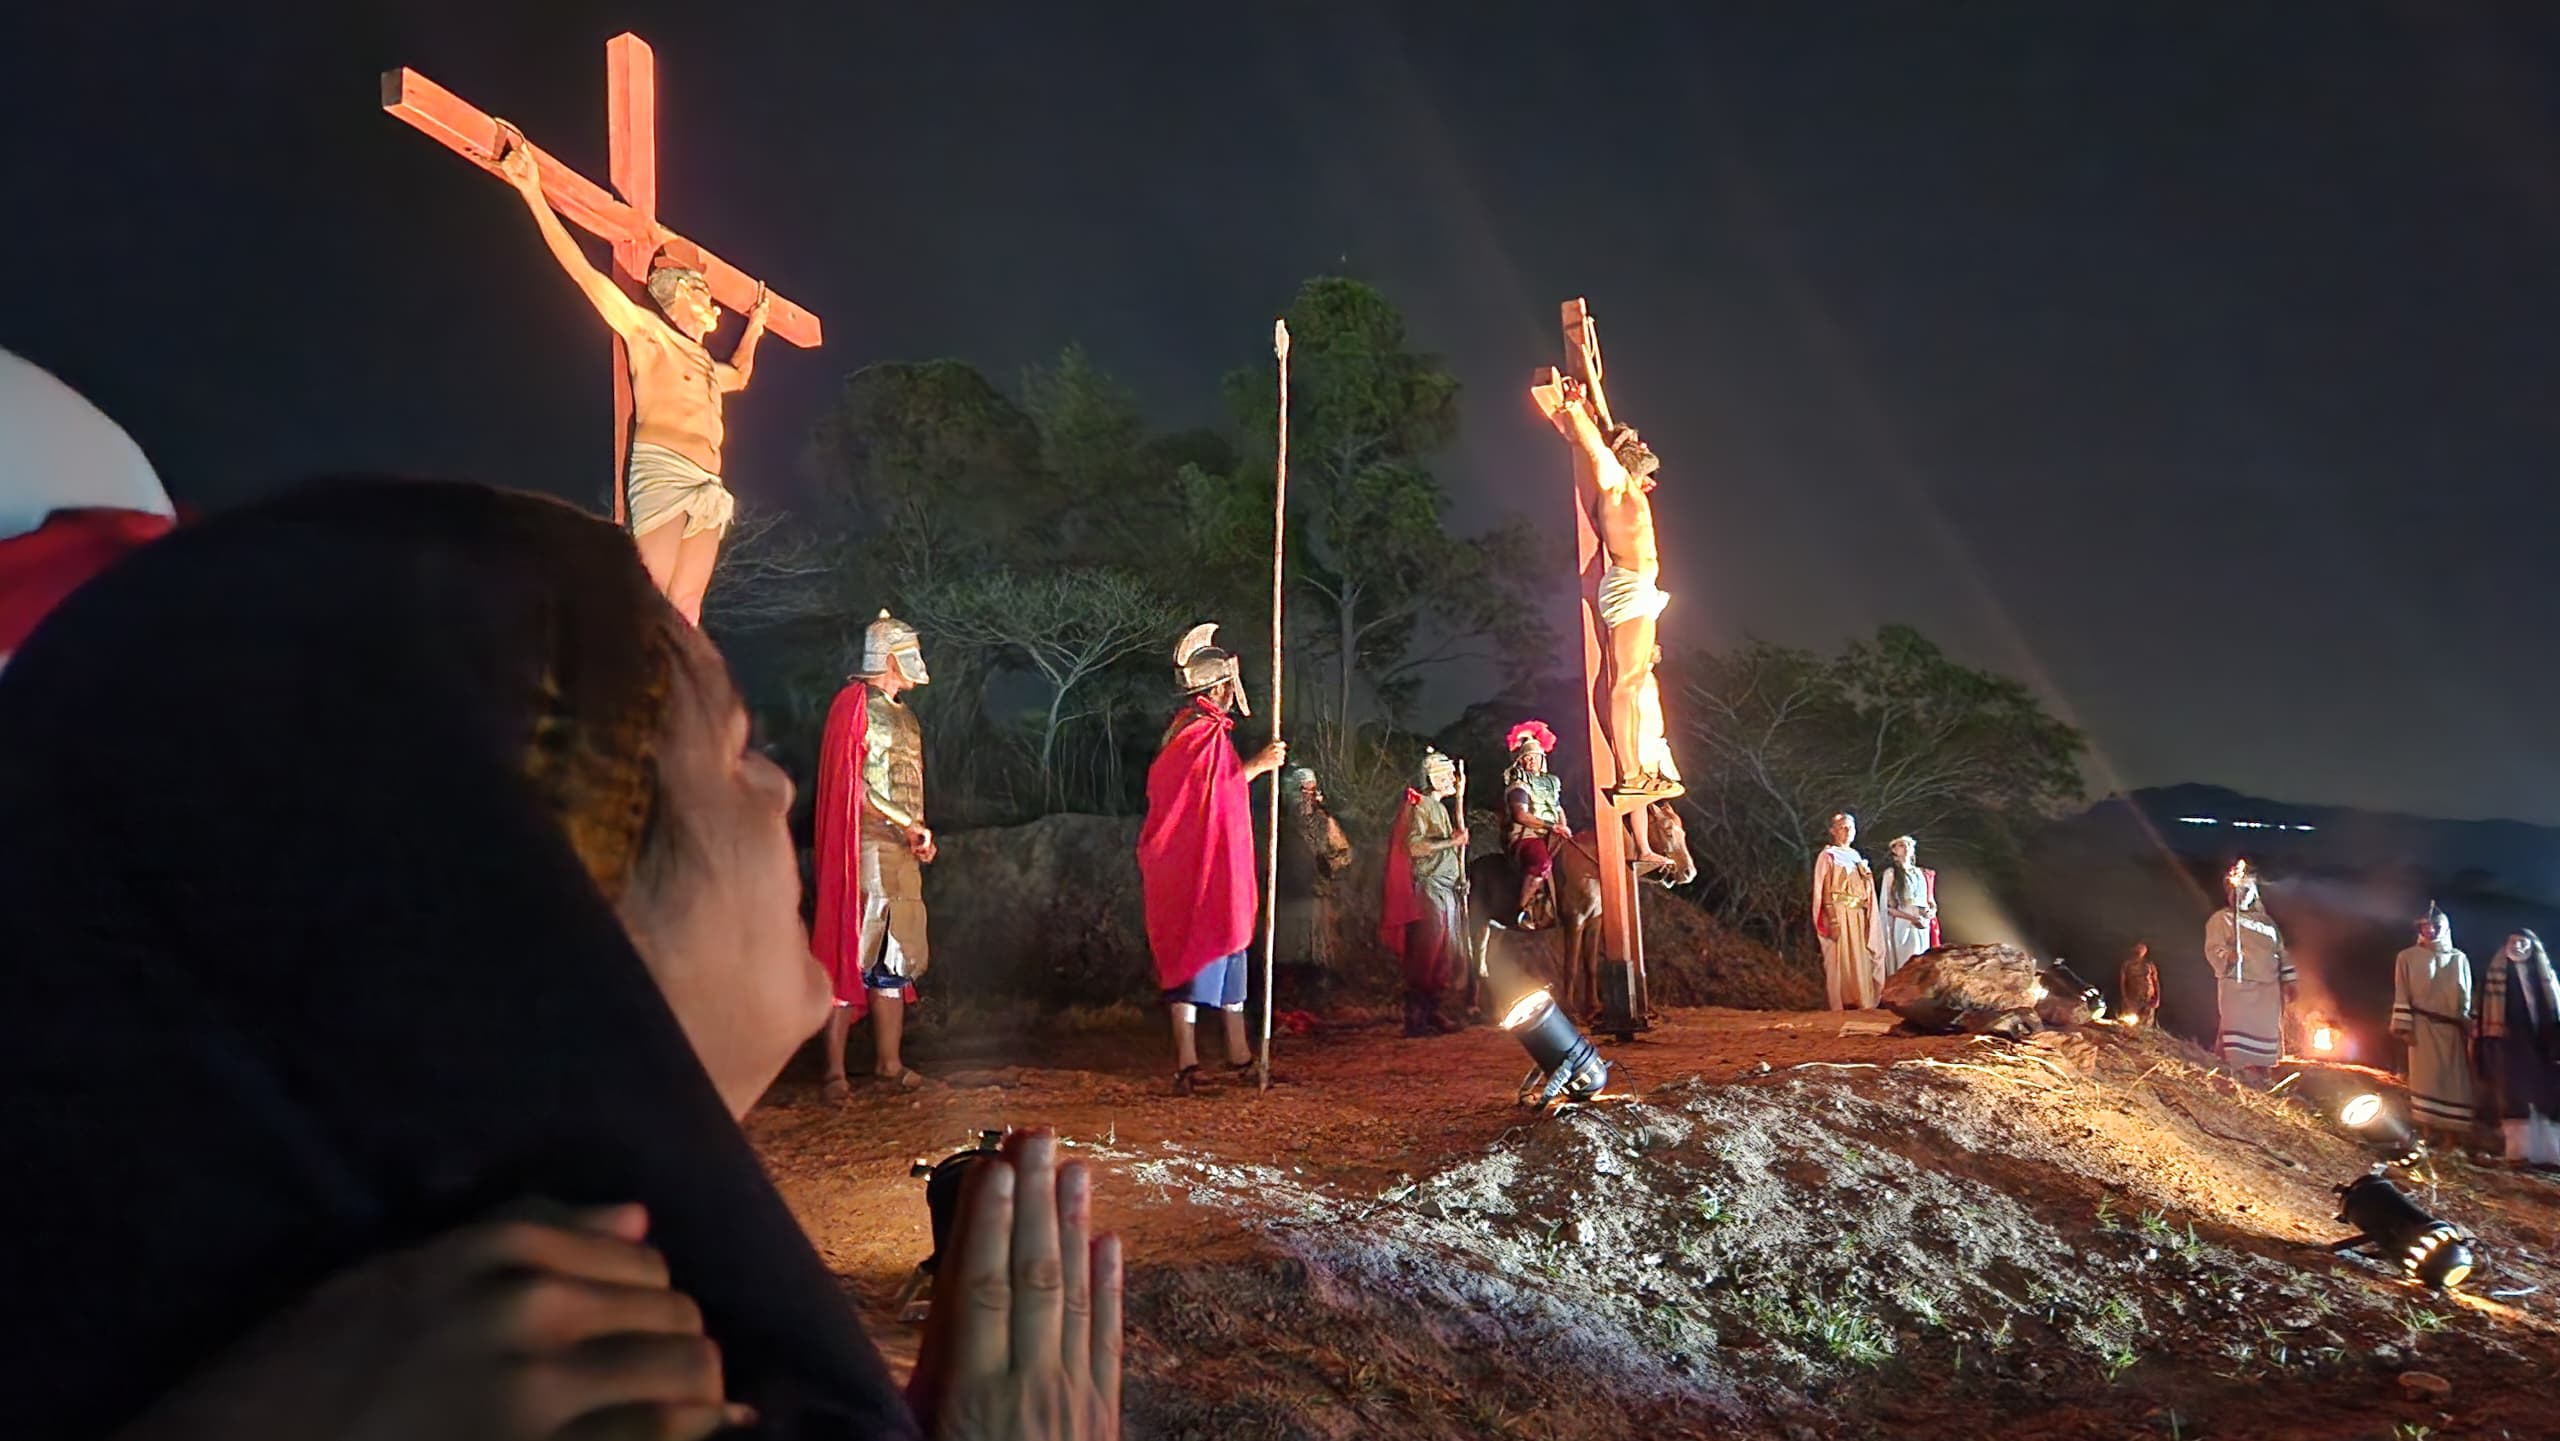 Bejumeros vivieron la pasión, muerte y resurrección de Jesucristo-Agencia Carabobeña de Noticias – ACN – Carabobo